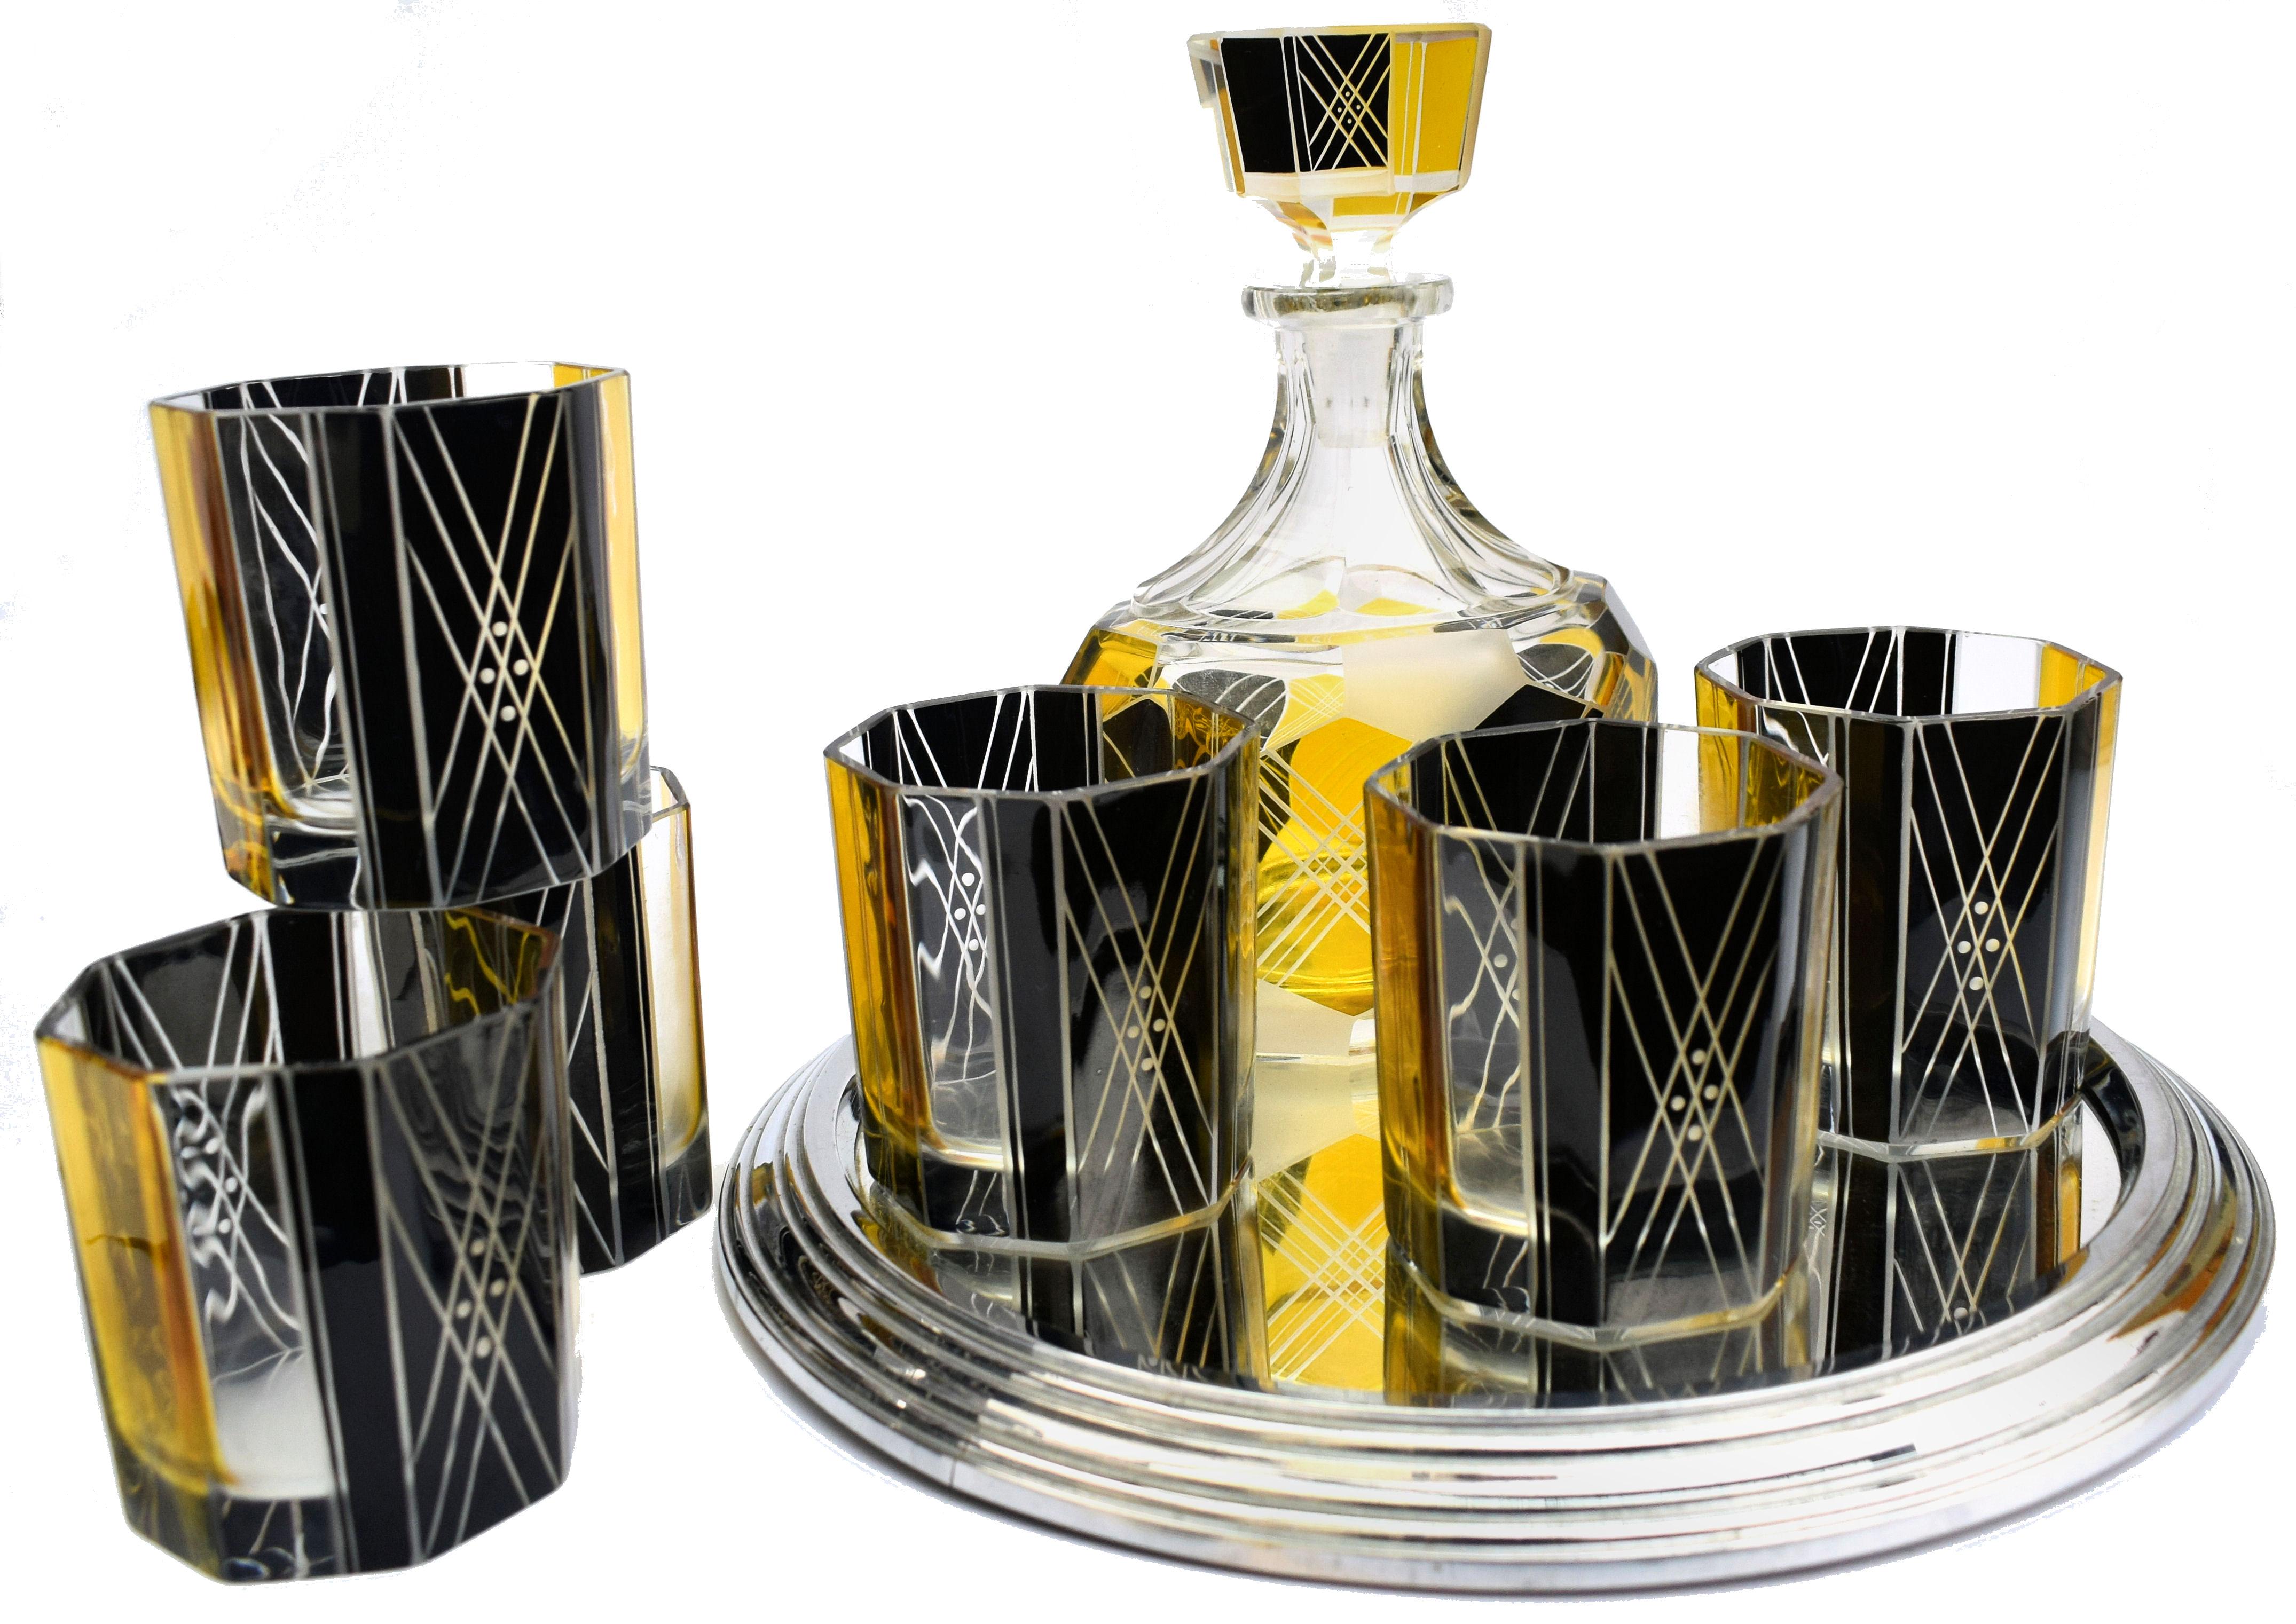 Sehr hochwertige, sehr auffällig aussehende tschechische Glaskaraffe aus den 1930er Jahren im Art-Déco-Stil. Mit einer Kristallkaraffe in klassischer Form mit Stopfen und sechs Glasbechern in angemessener Größe. Das gesamte Set ist gelb und schwarz